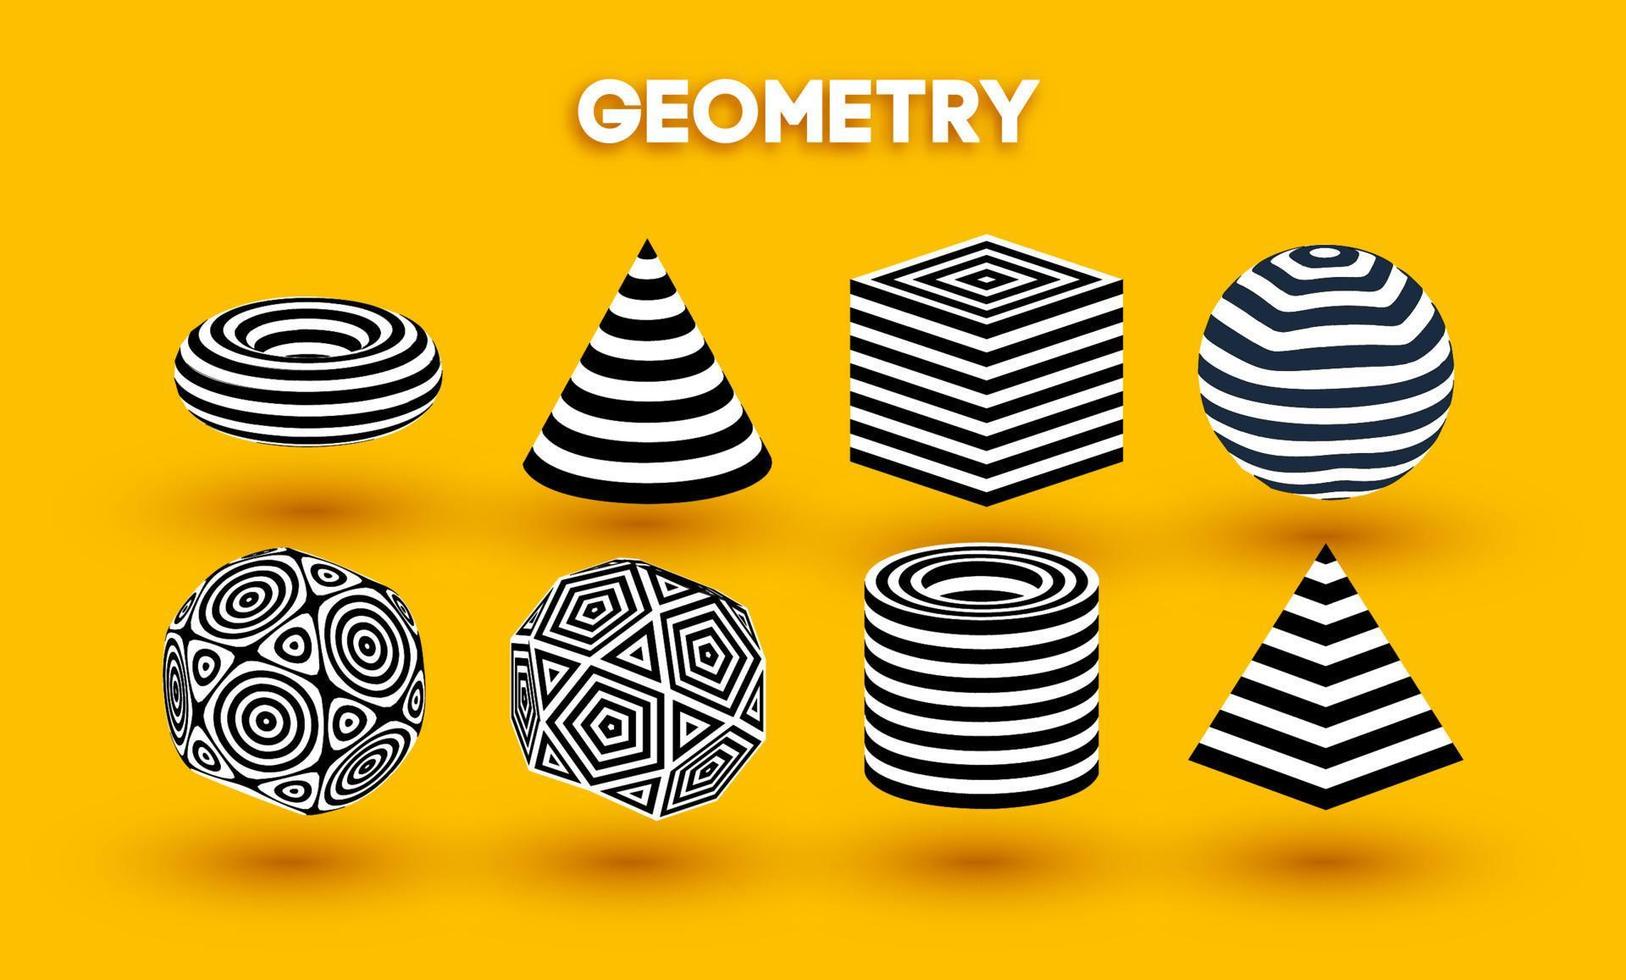 conjunto de vectores de formas de ilusión óptica de fondo amarillo. pirámide rayada. cilindro y cubo óptico abstracto diseño de líneas en blanco y negro. circular formas redondas geométricas.